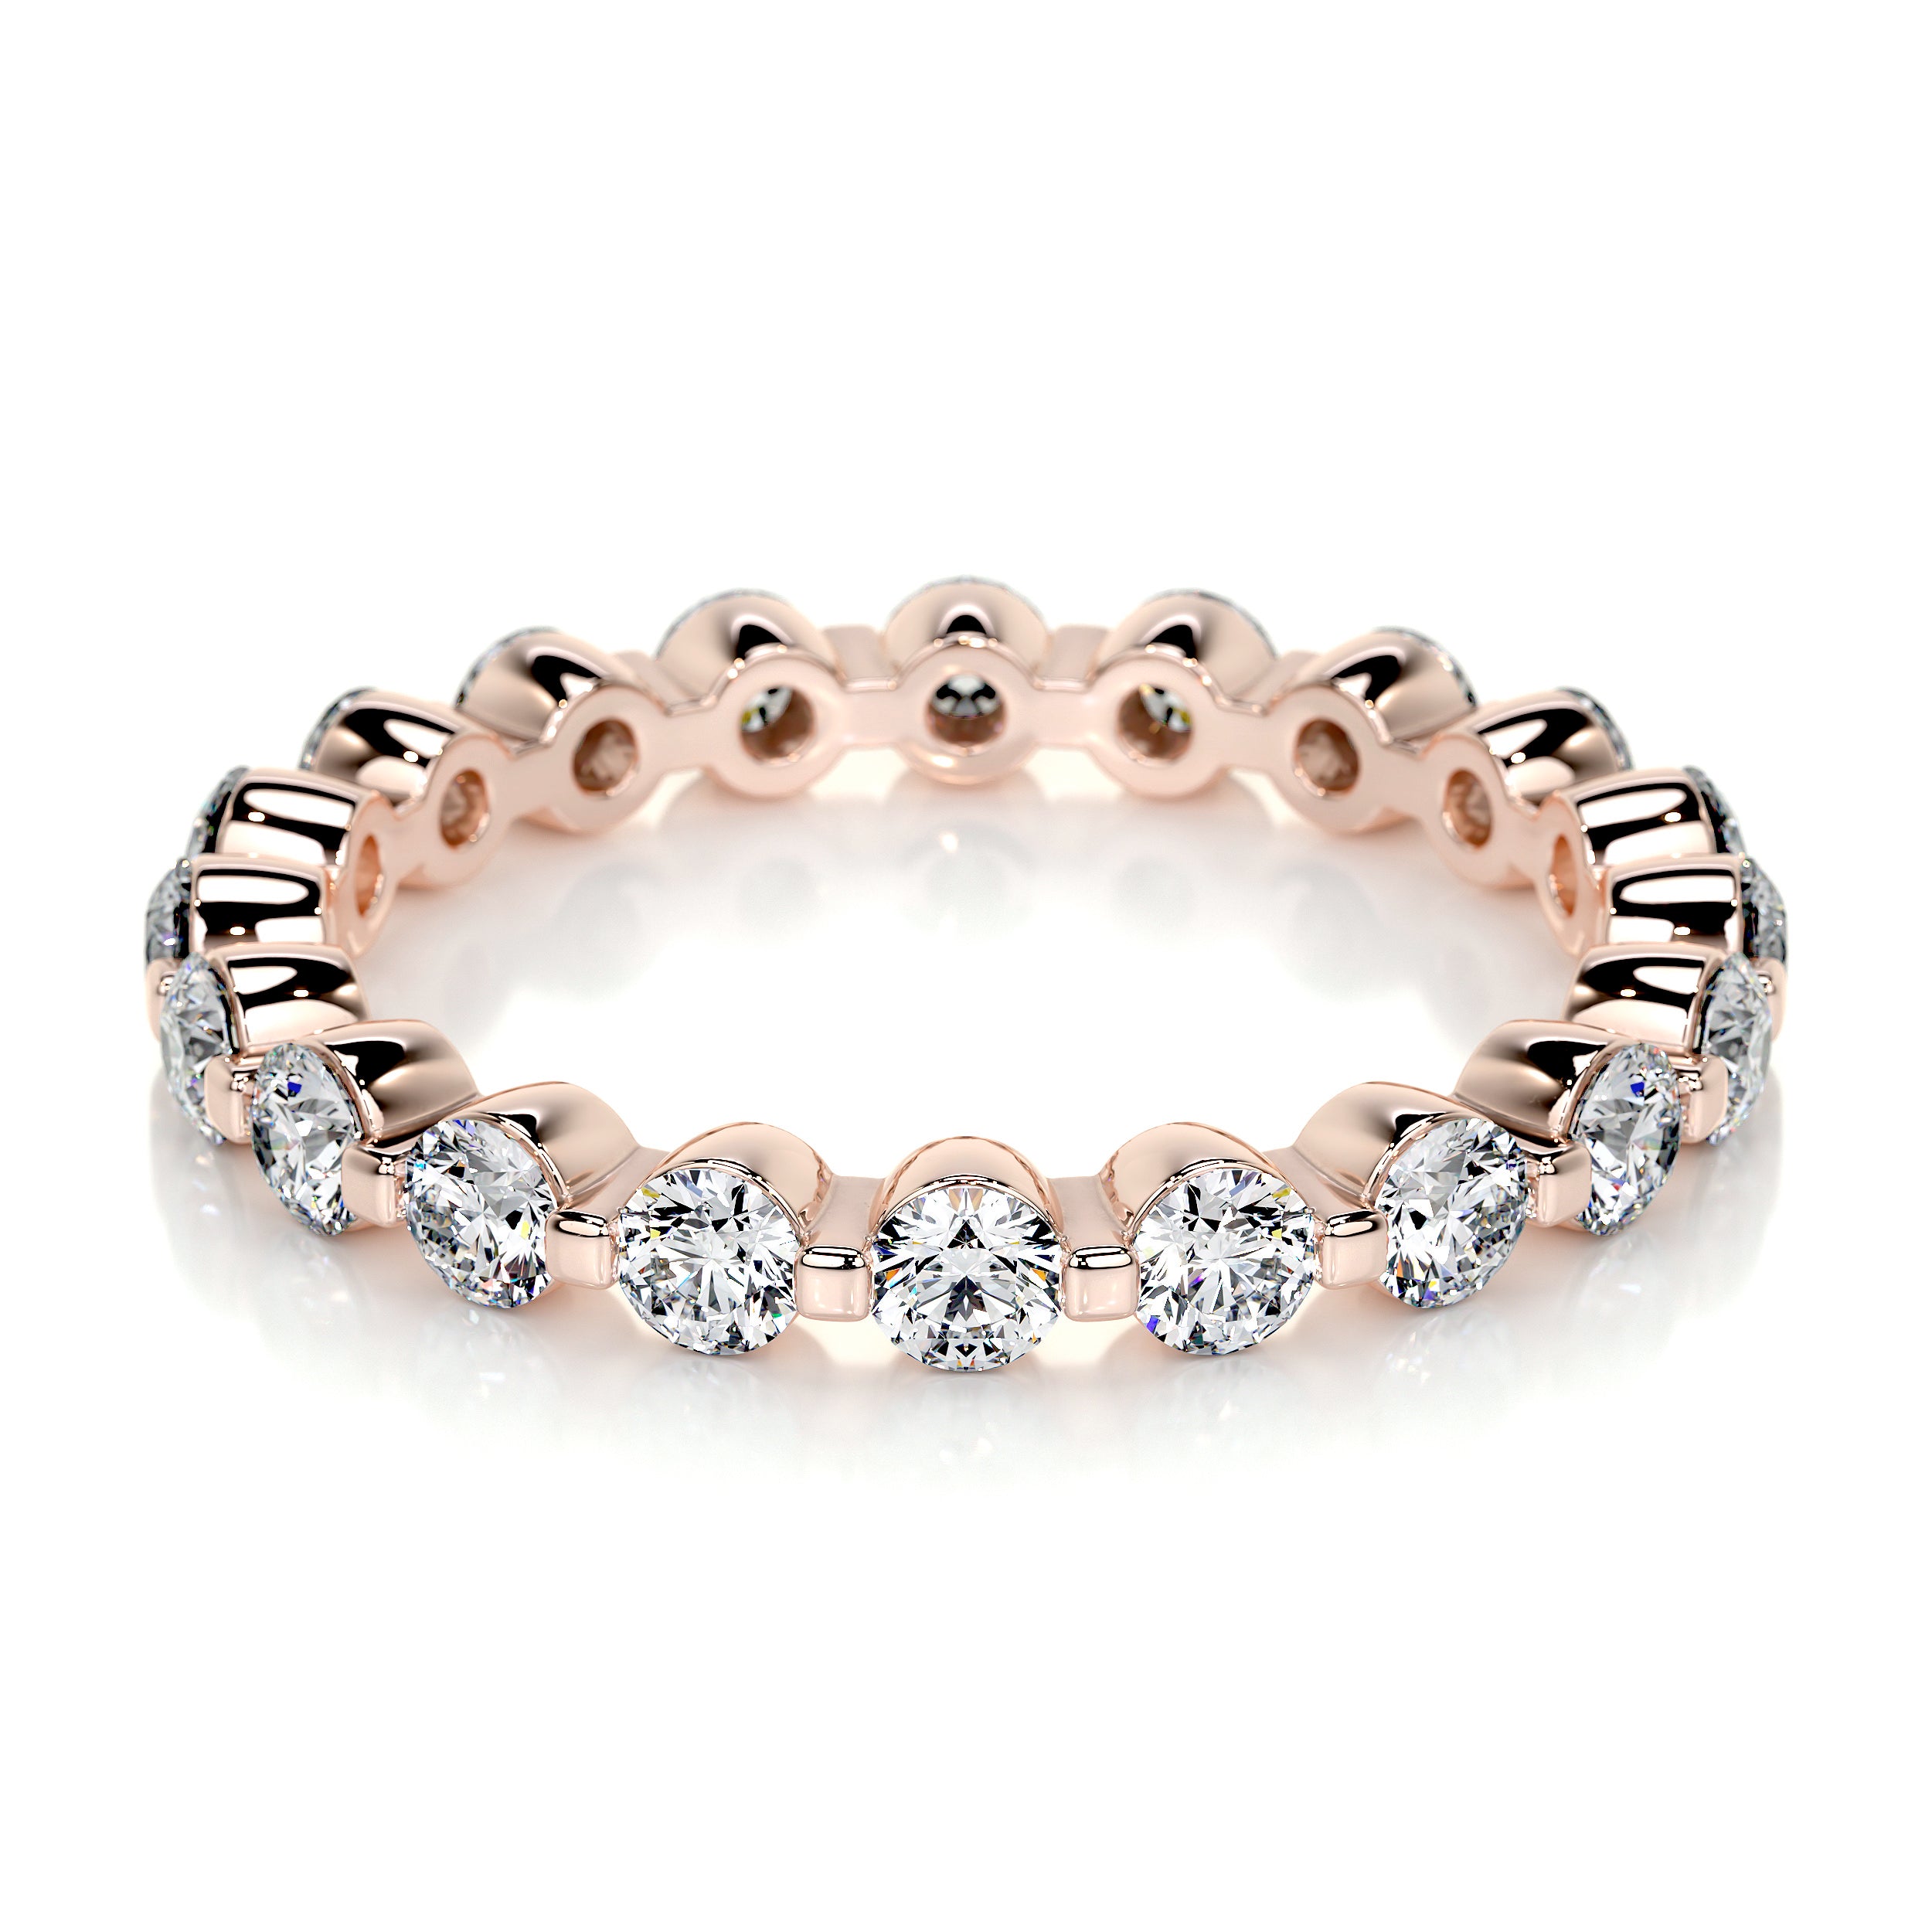 Josie Lab Grown Eternity Wedding Ring   (1.75 Carat) -14K Rose Gold